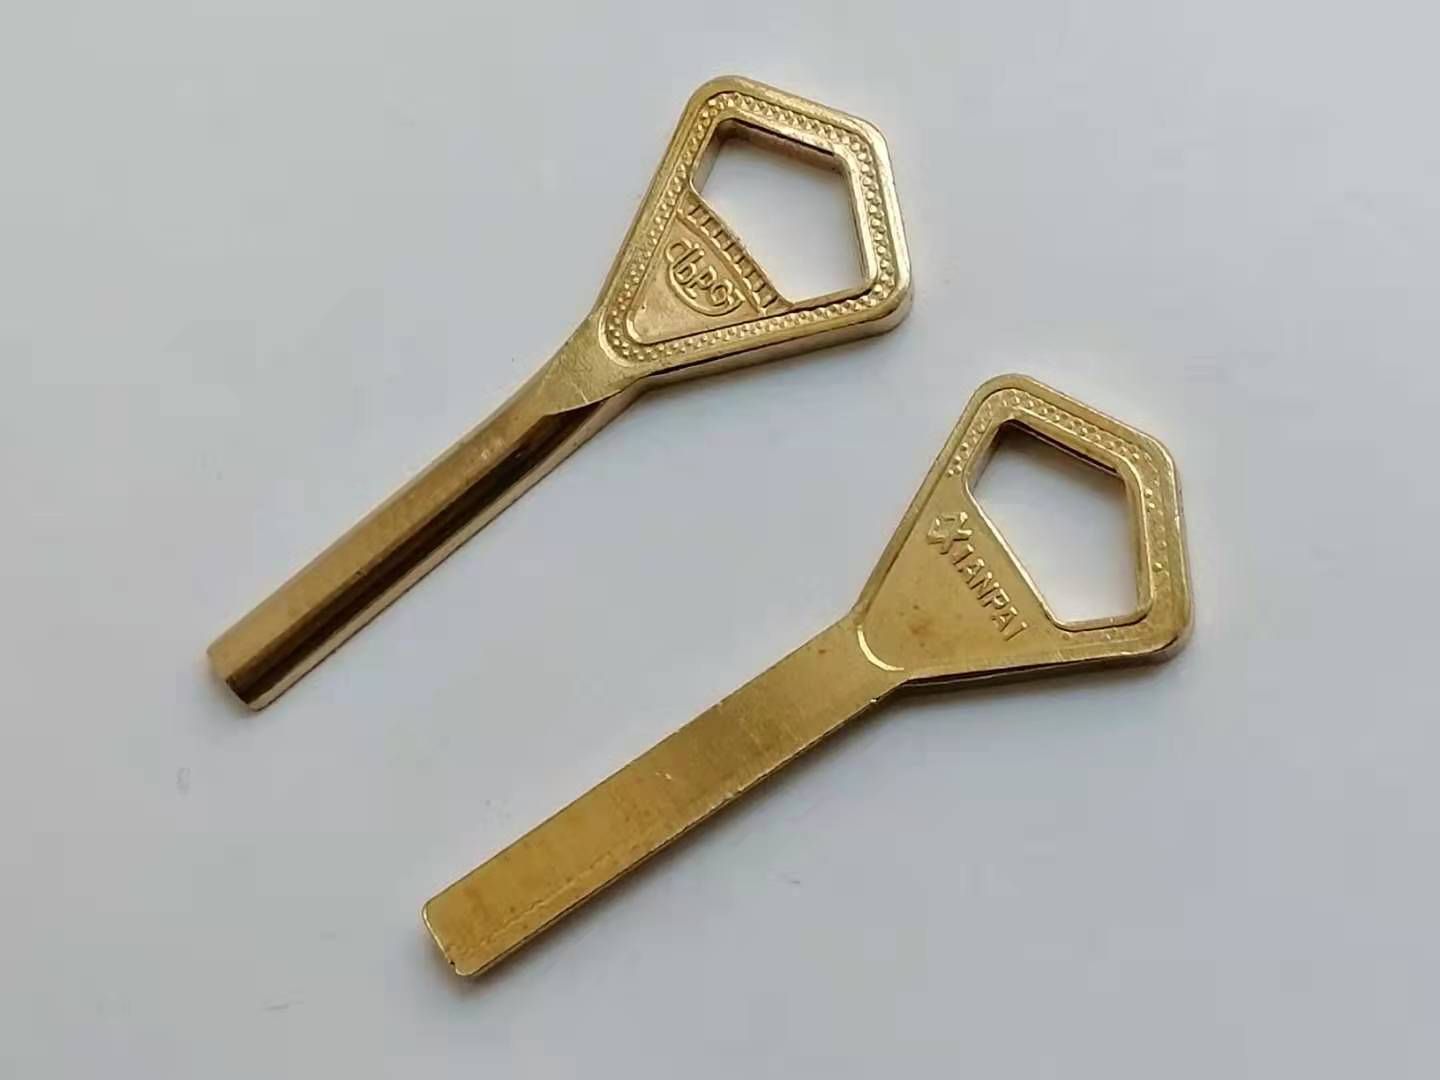 Ключ из желтого металла